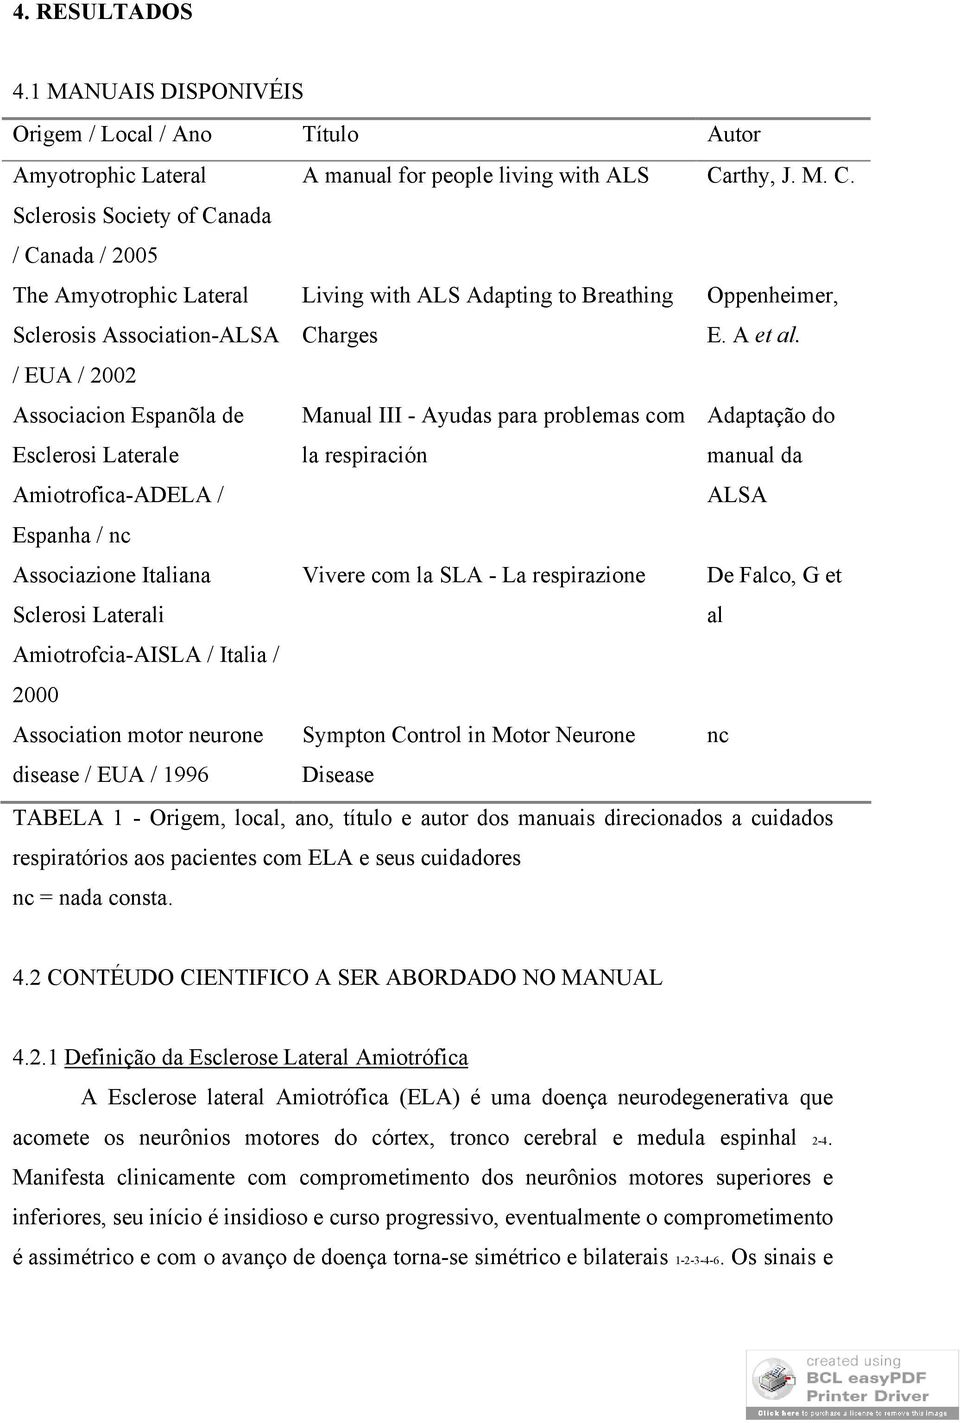 / EUA / 2002 Associacion Espanõla de Esclerosi Laterale Amiotrofica-ADELA / Manual III - Ayudas para problemas com la respiración Adaptação do manual da ALSA Espanha / nc Associazione Italiana